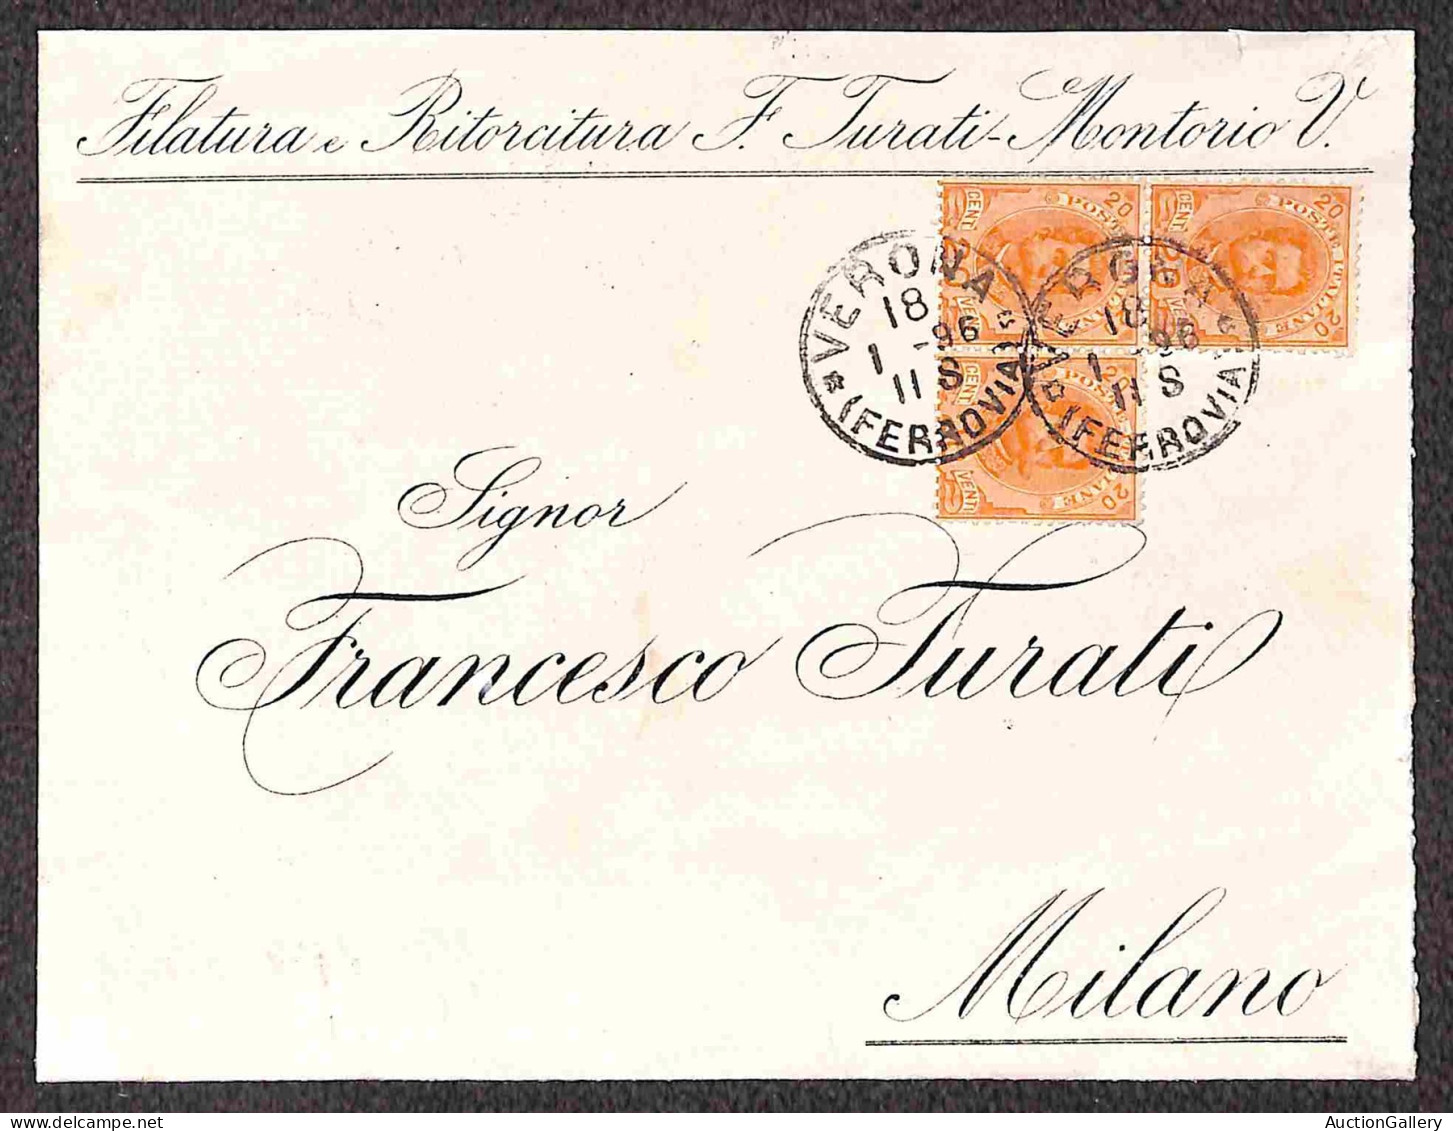 Regno - Umberto I - Due lettere e due frontespizi con 20 cent (61) tra cui un blocco di tre a seggiola e una combinazion